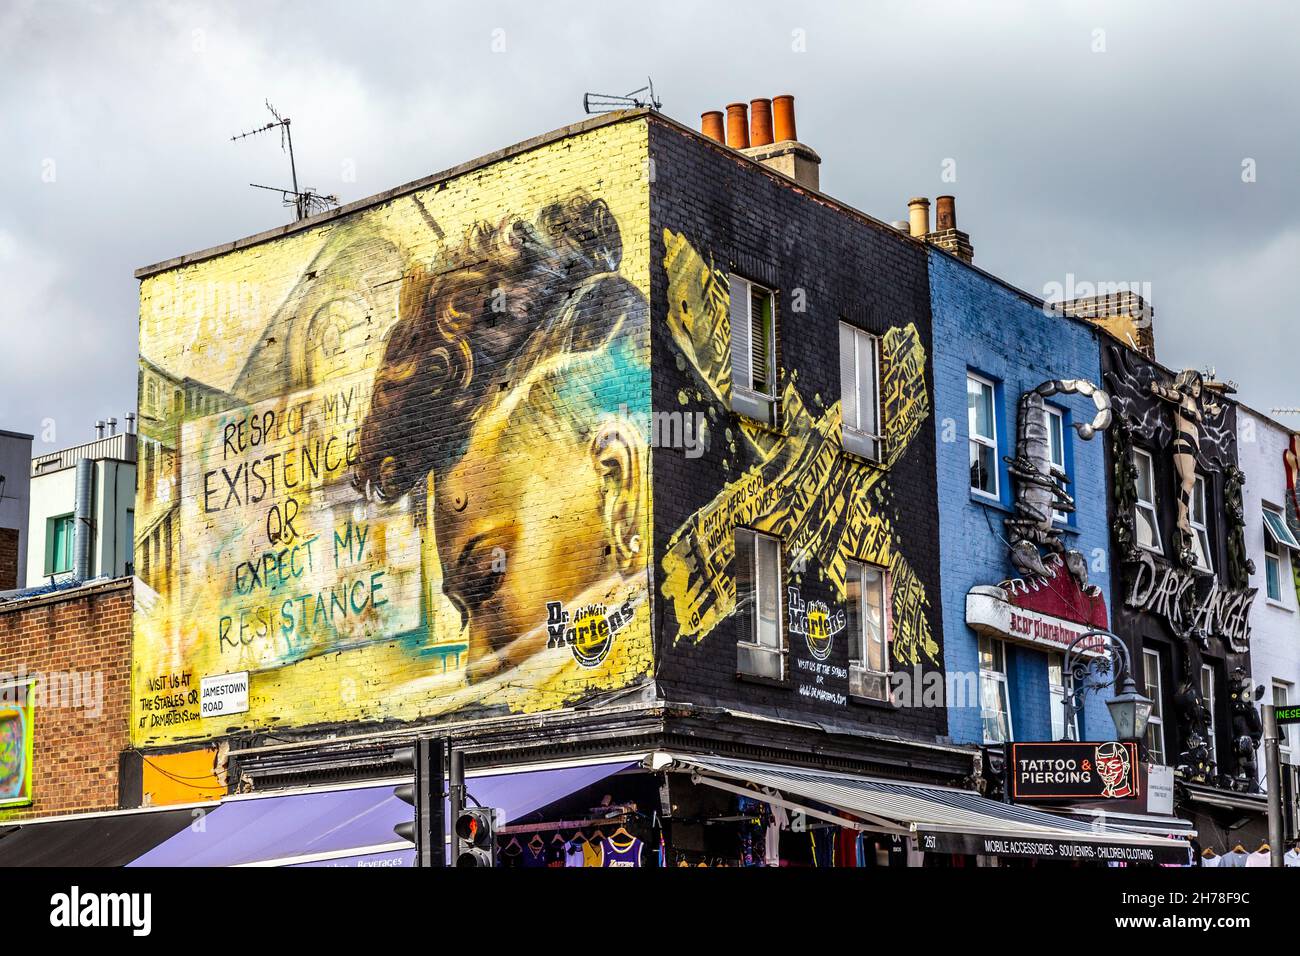 Wandmalereien und dekorierte Ladenfronten an der Kreuzung von Camden High Street und Jamestown Road, Camden, London, Großbritannien Stockfoto